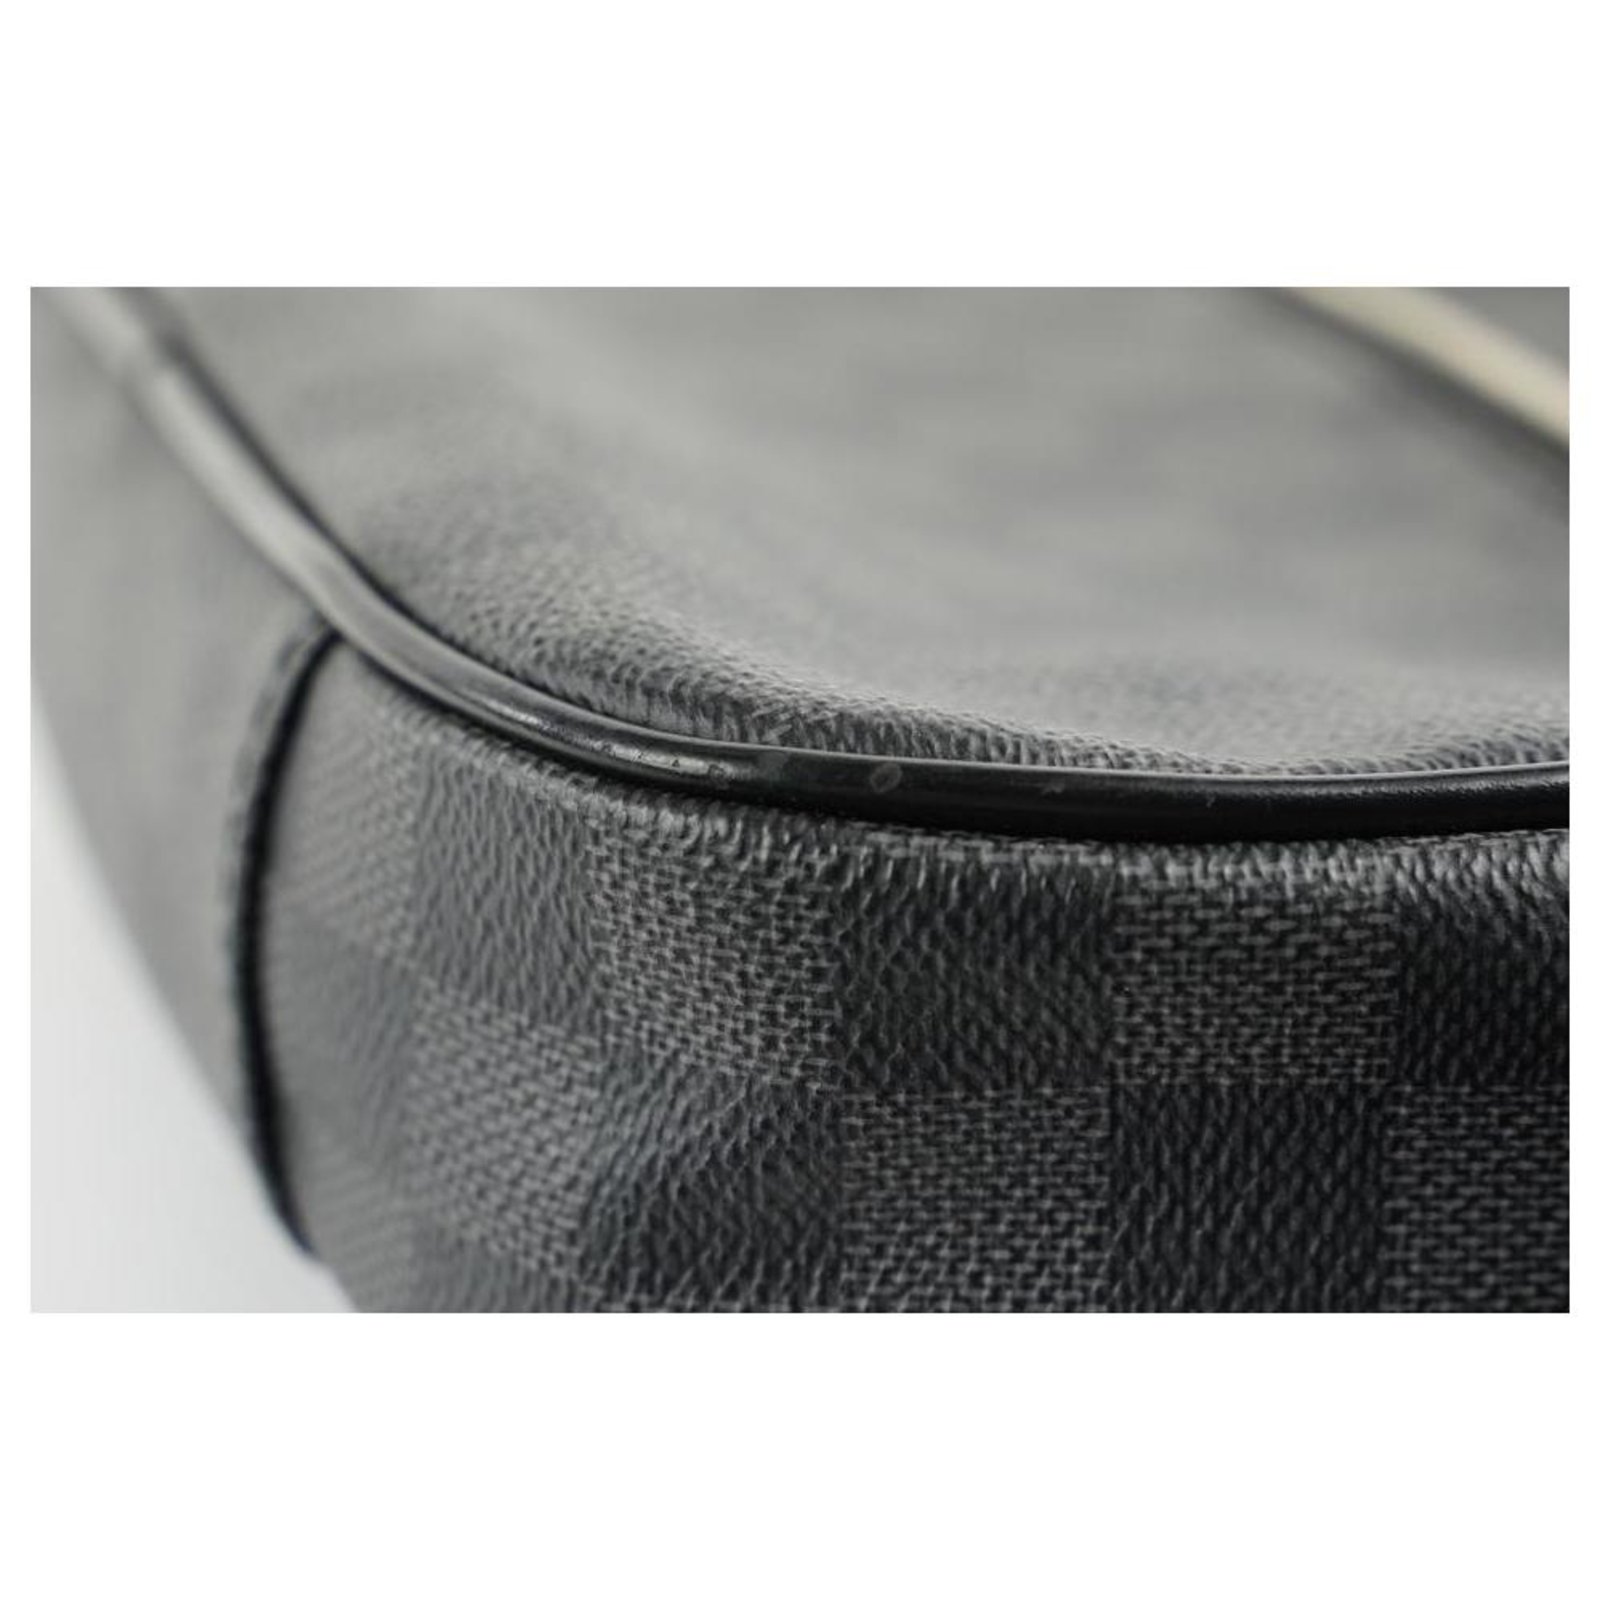 Louis Vuitton Damier Graphite Ambler Belt Bag Fanny Pack Wait Pouch 446lvs32